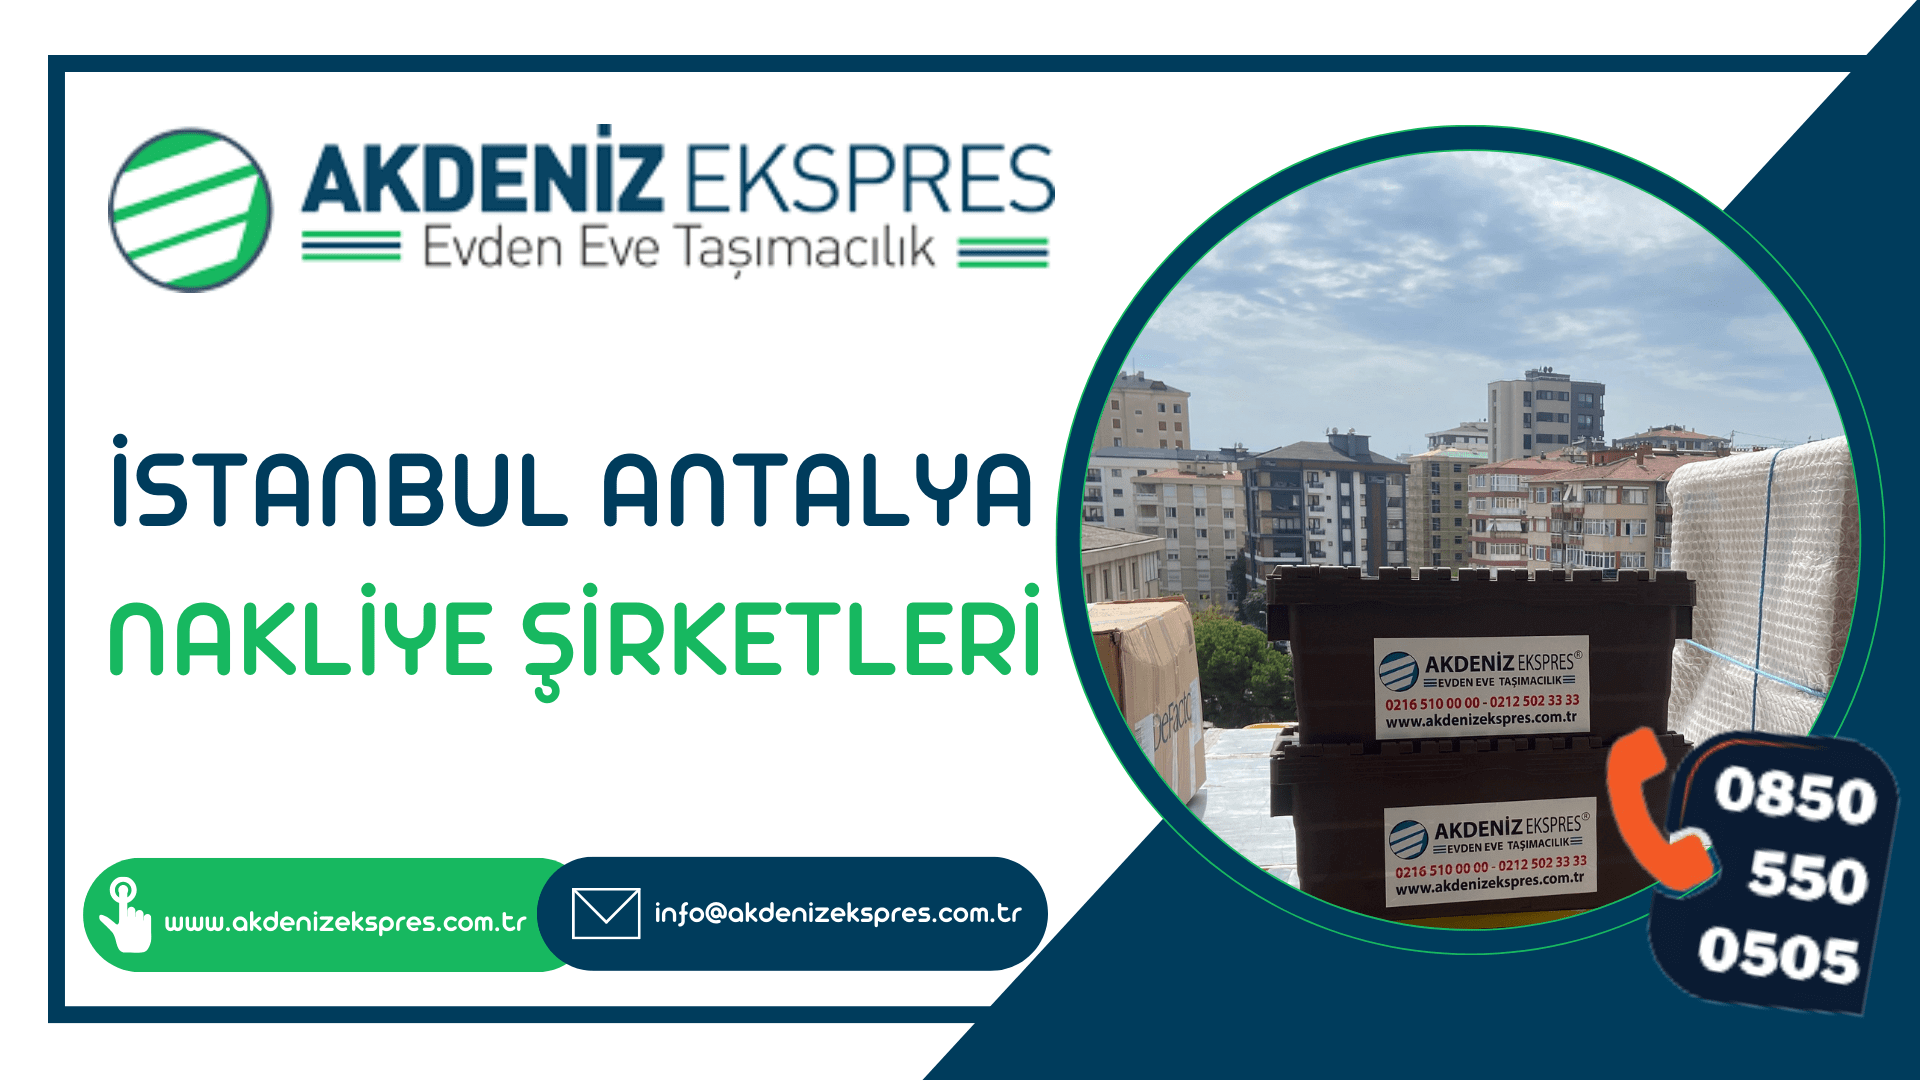 İstanbul Antalya nakliye şirketleri